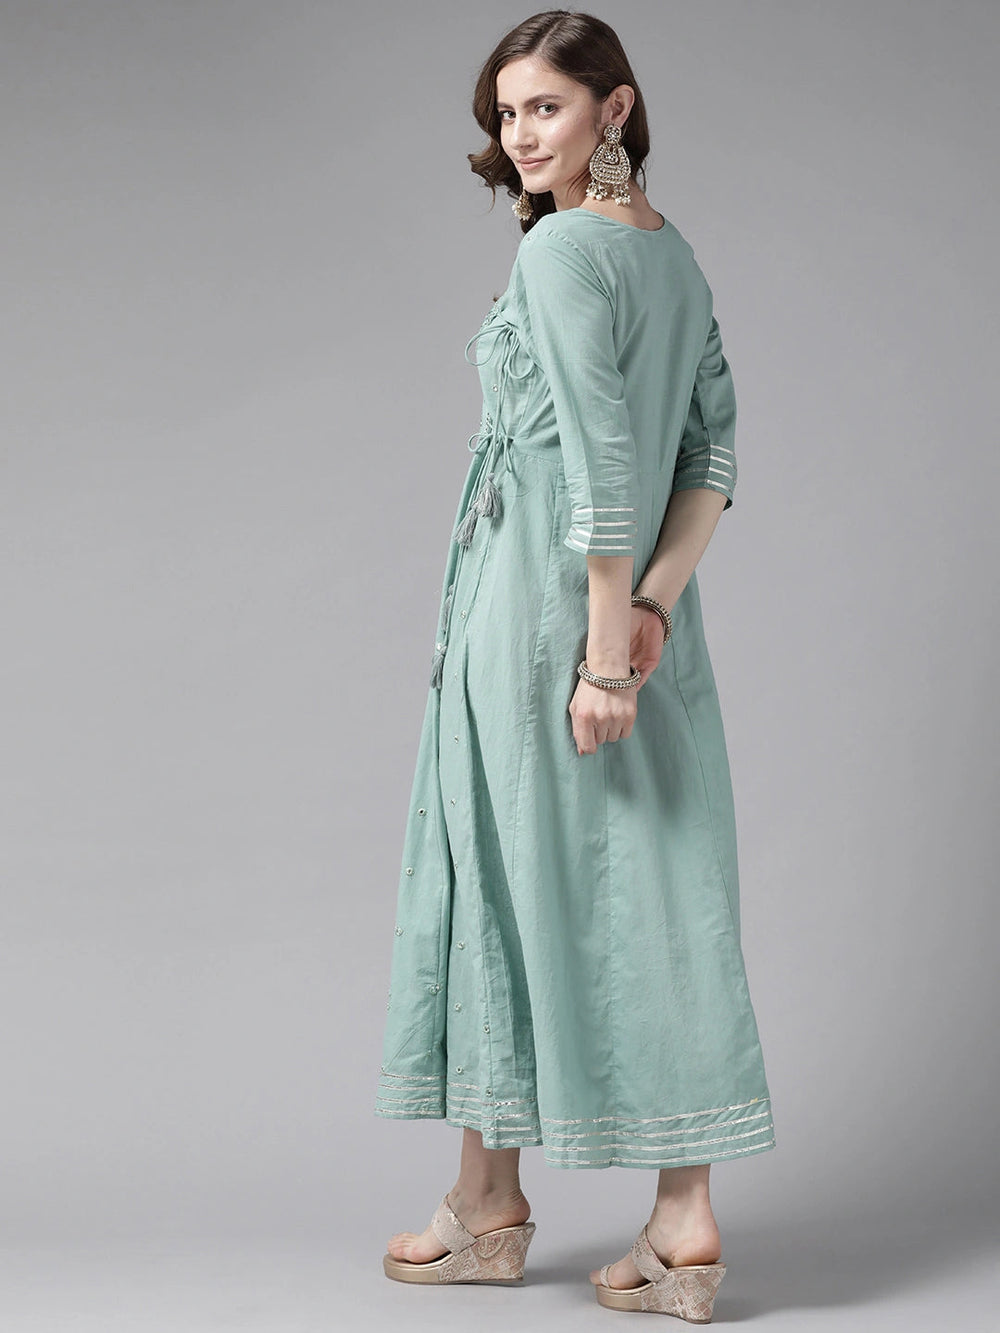 Sea Green Floral Dress-Yufta Store-2195DRSSGM